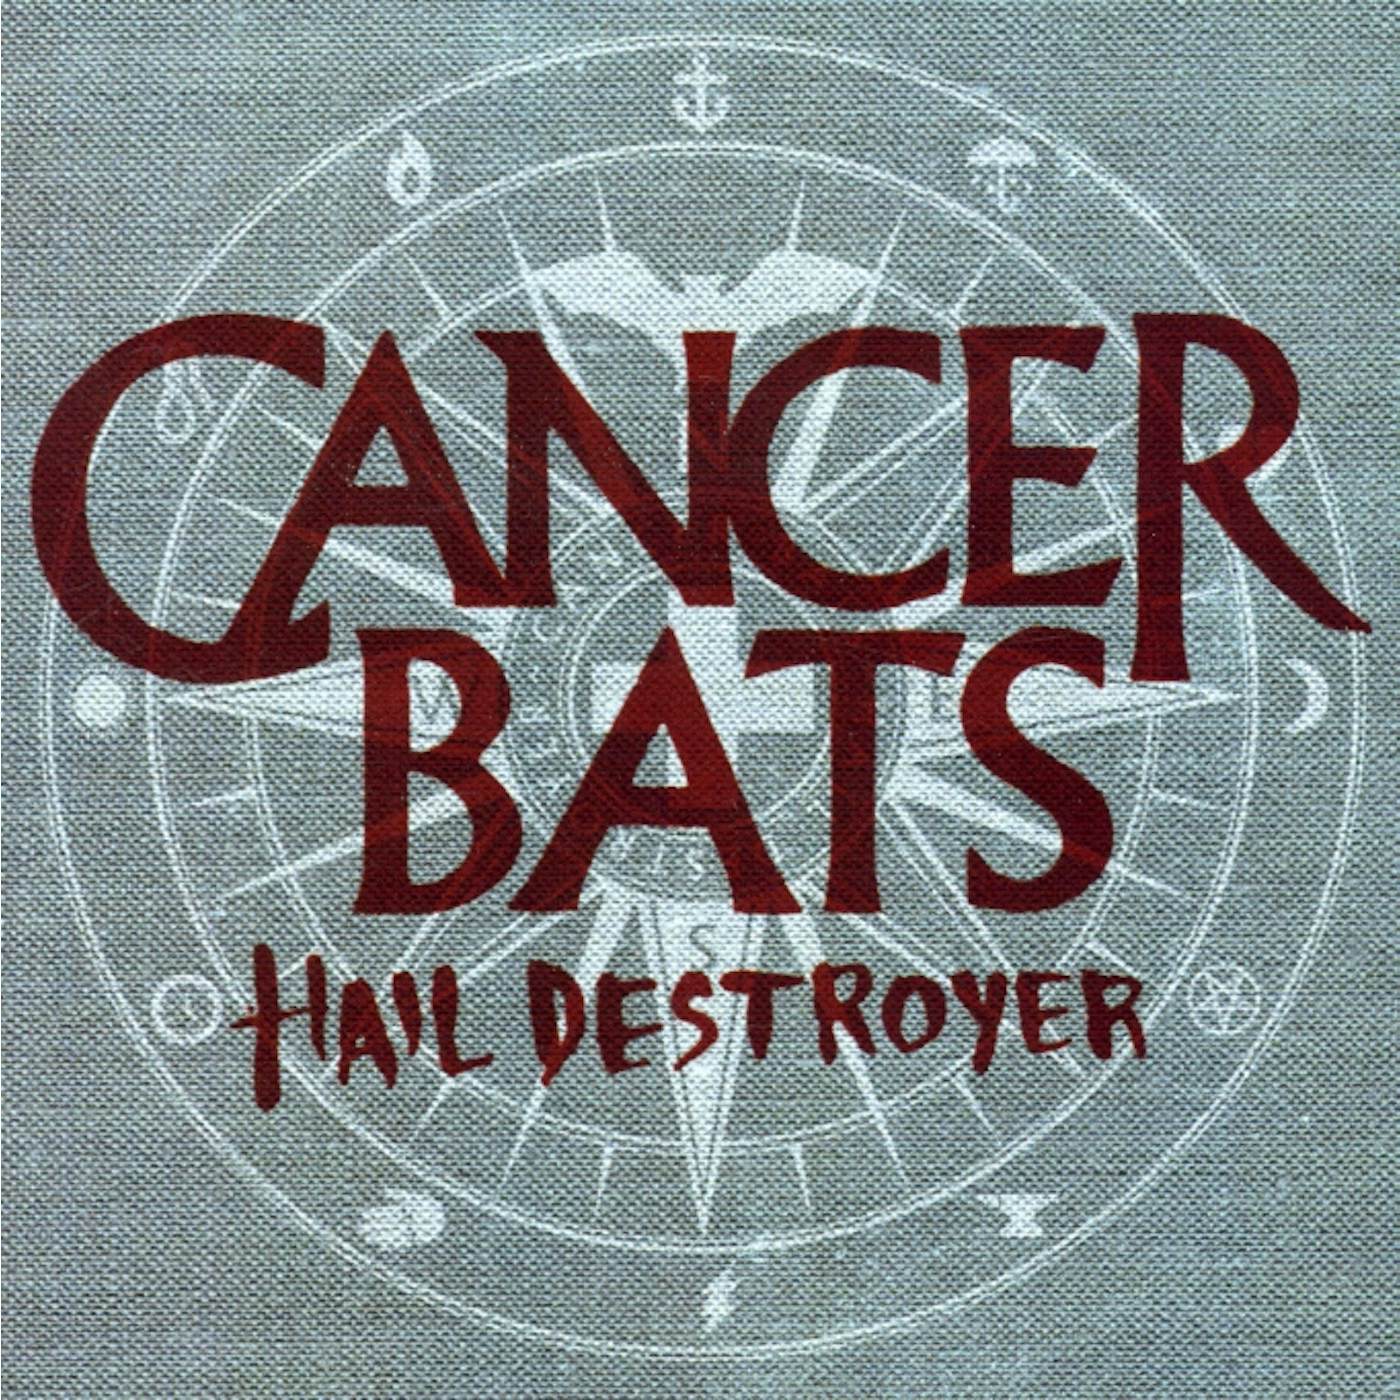 Cancer Bats HAIL DESTROYER CD